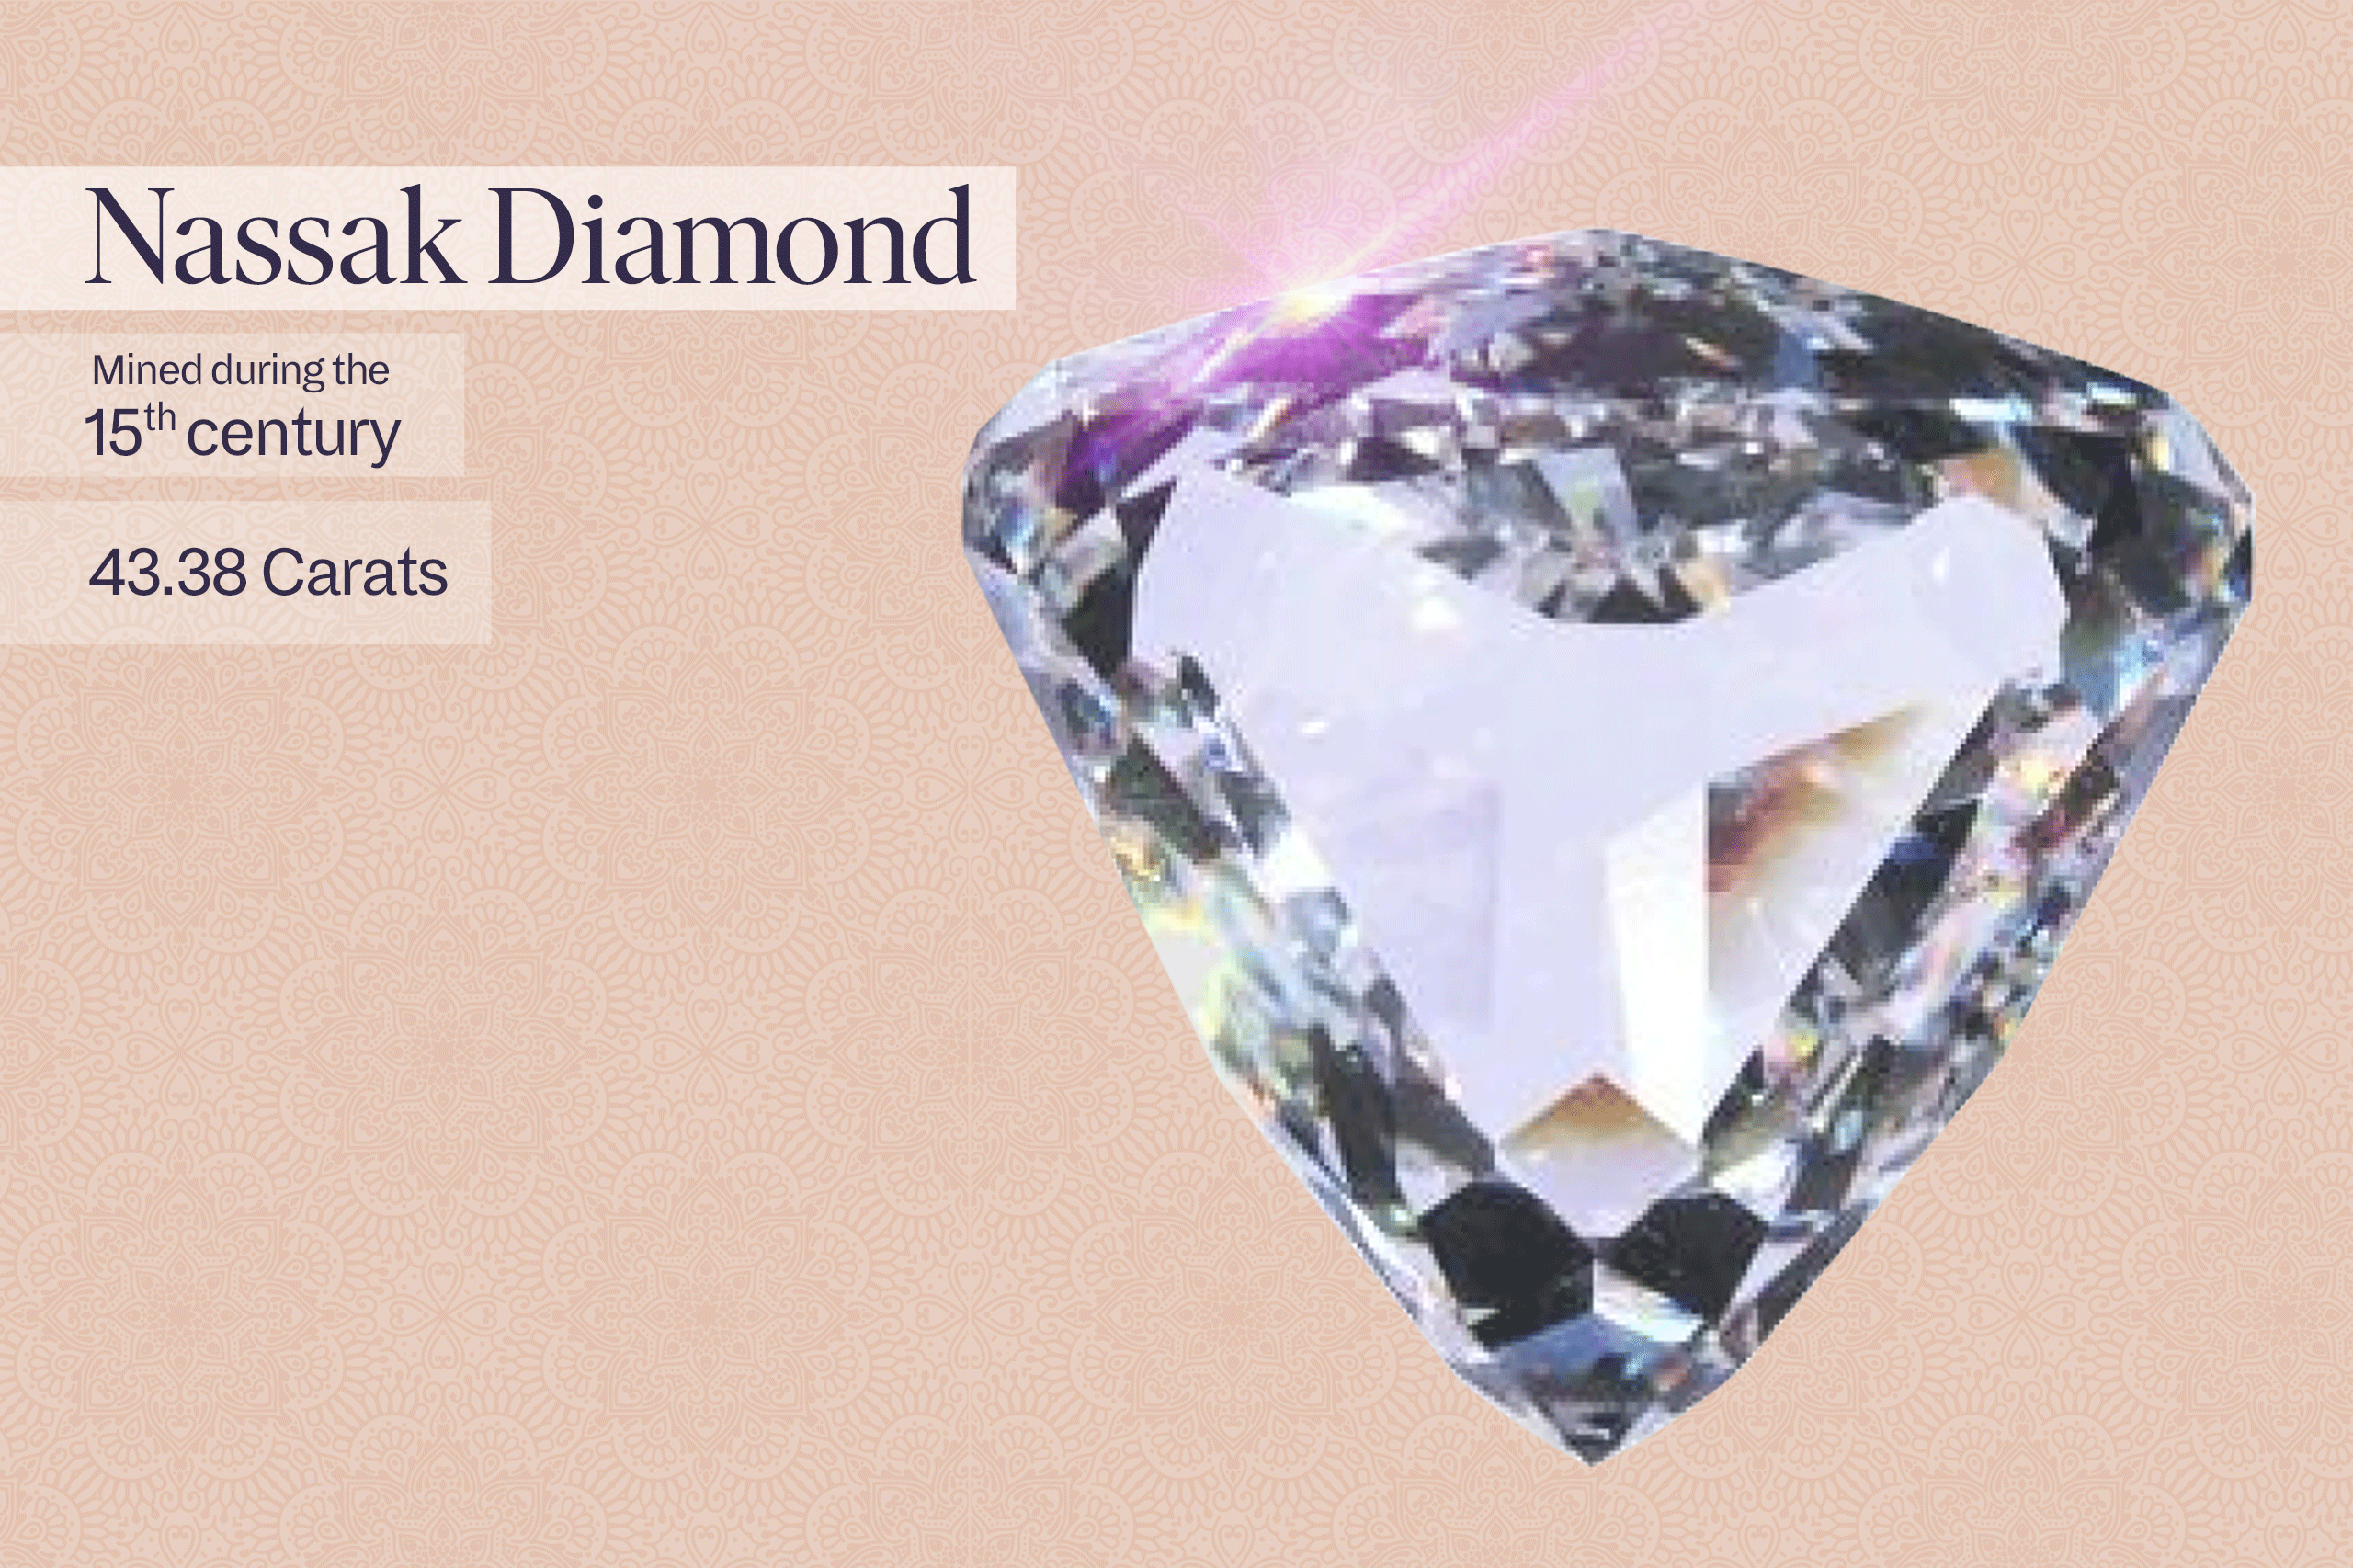 Diamond - Wikipedia